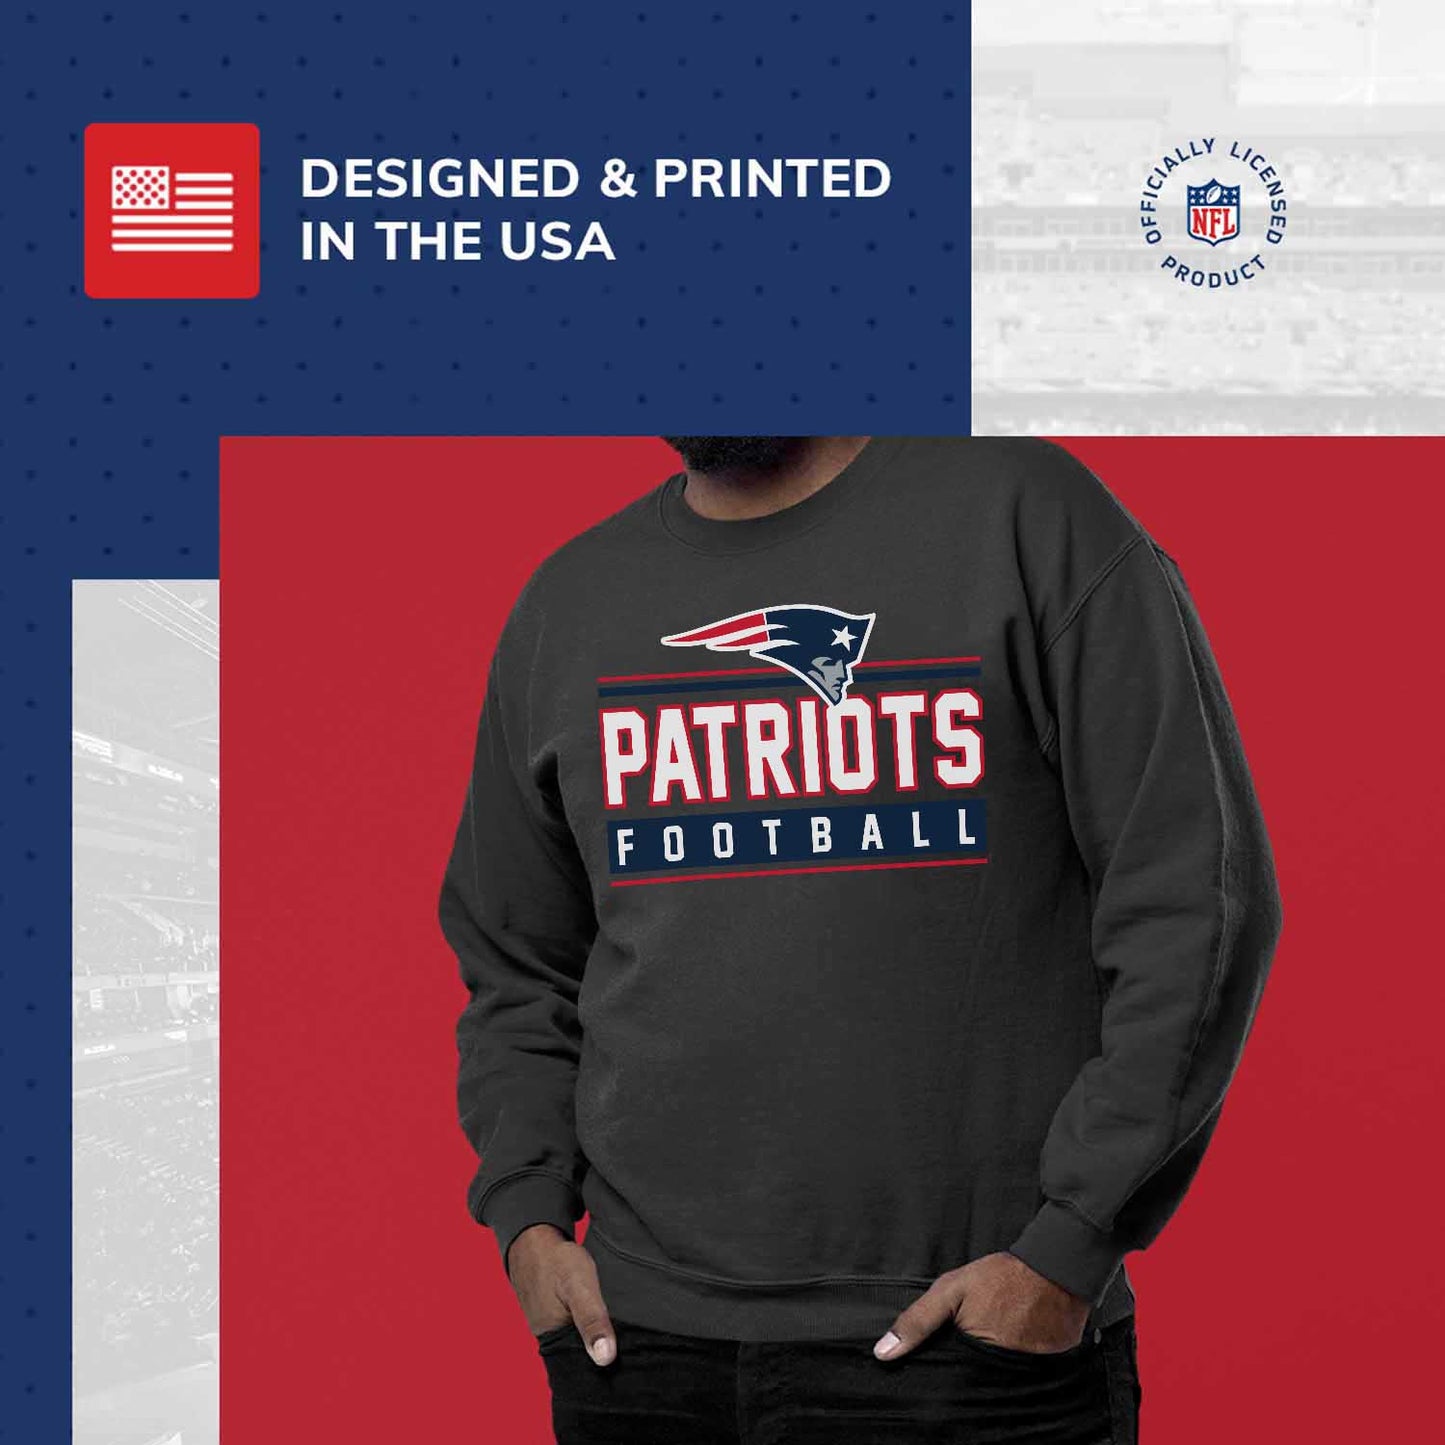 New England Patriots NFL Adult True Fan Crewneck Sweatshirt - Charcoal